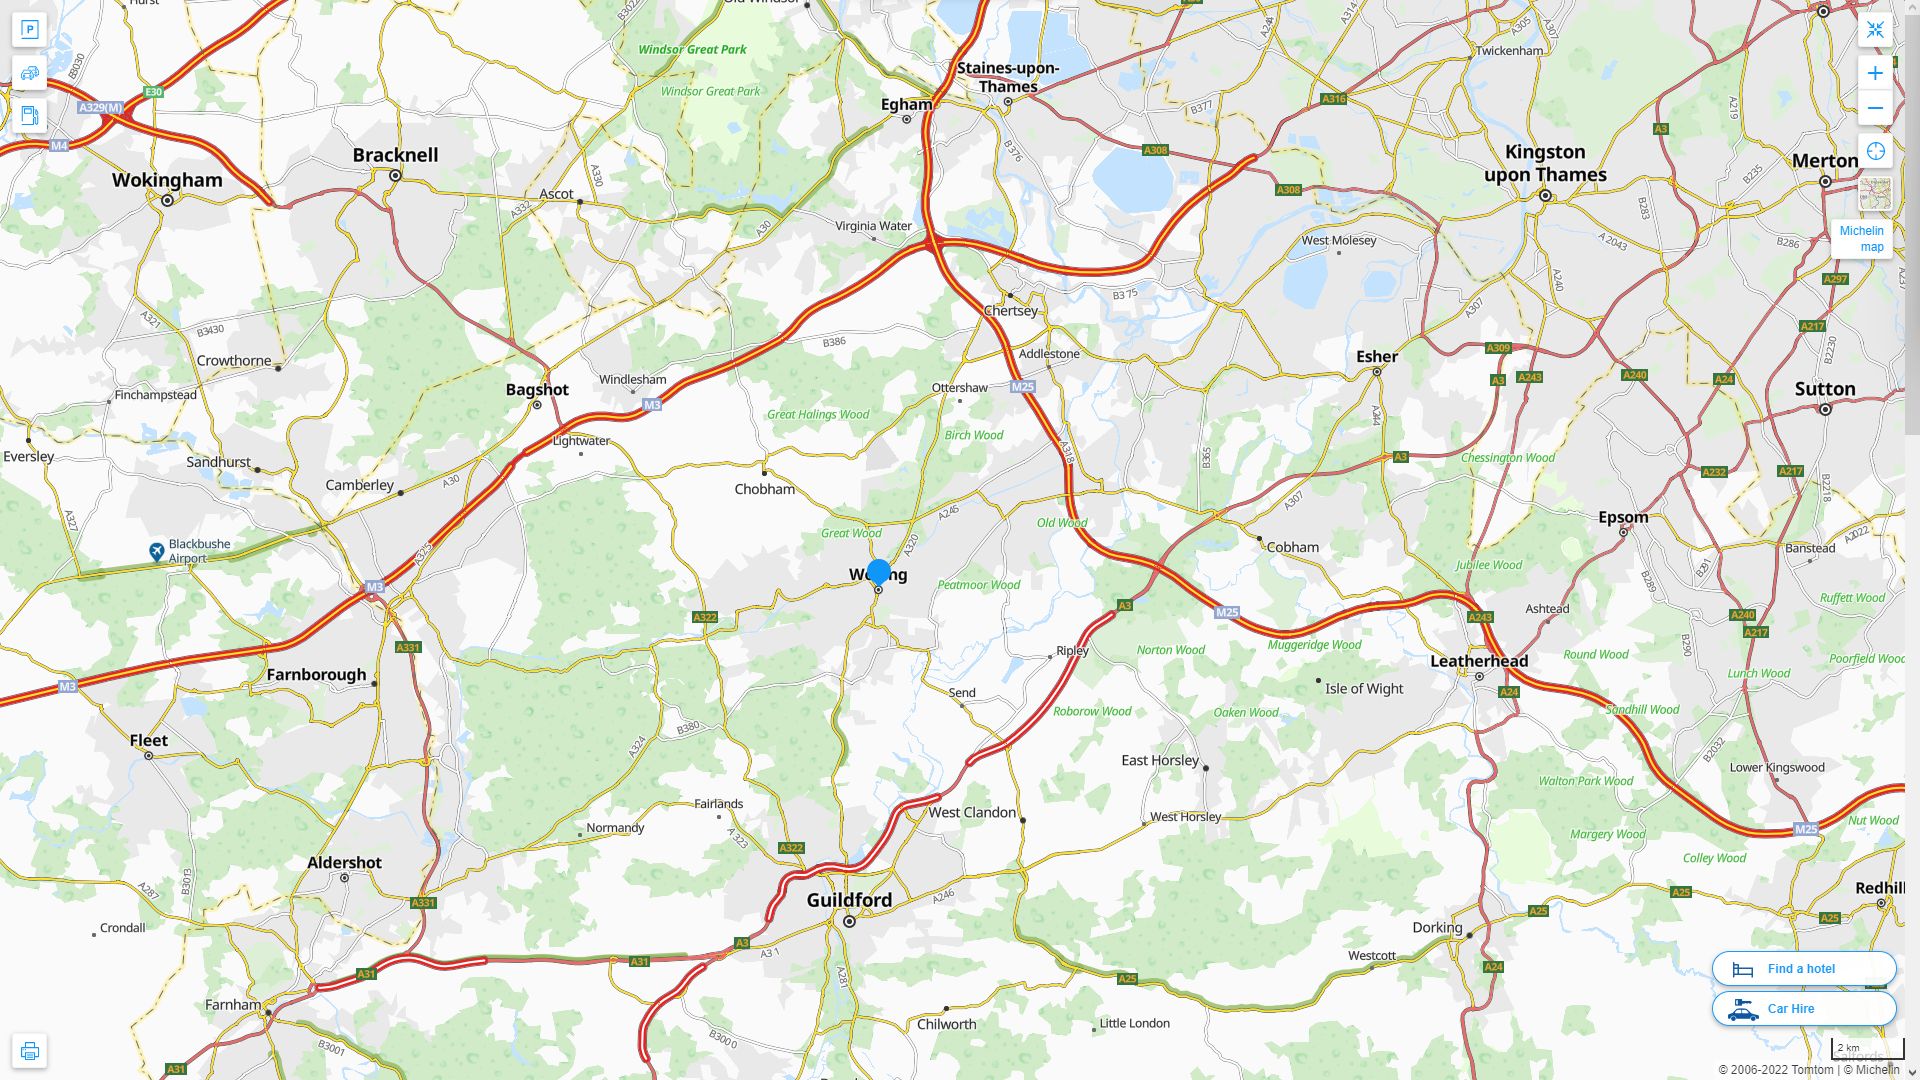 Woking Royaume Uni Autoroute et carte routiere